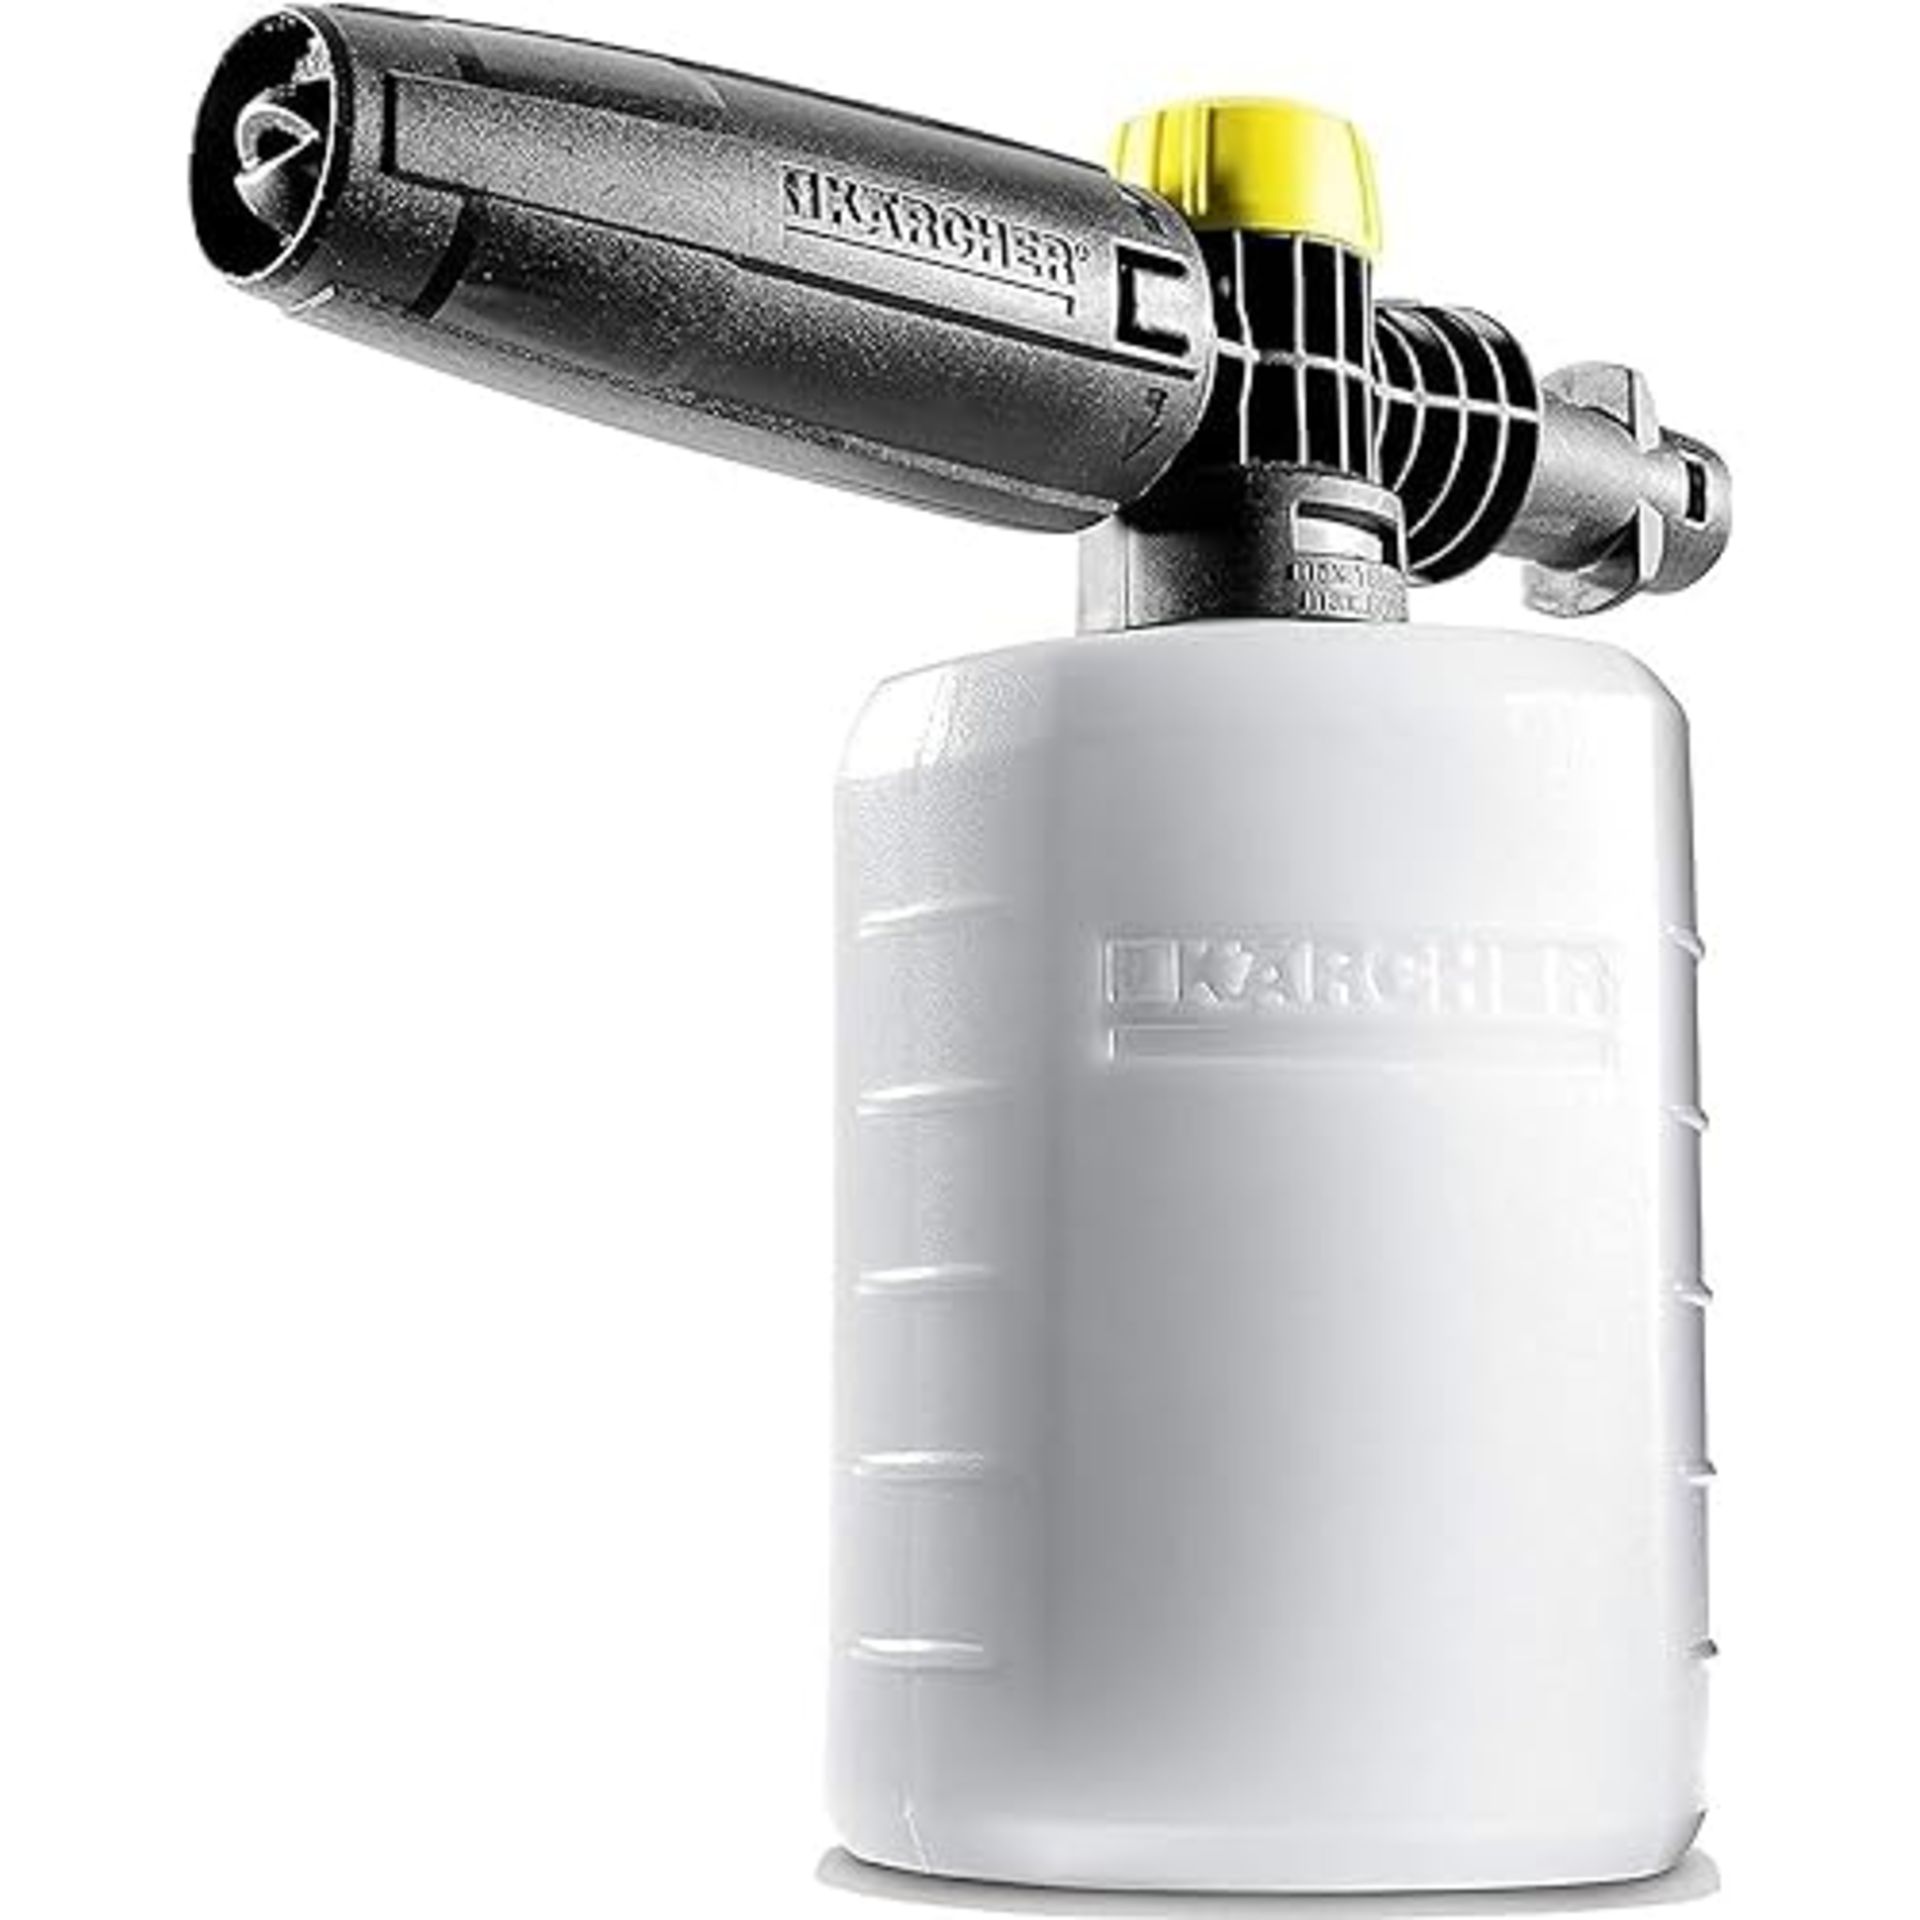 K??rcher FJ6 Foam Nozzle - Pressure Washer Accessory,Multi,0.6L